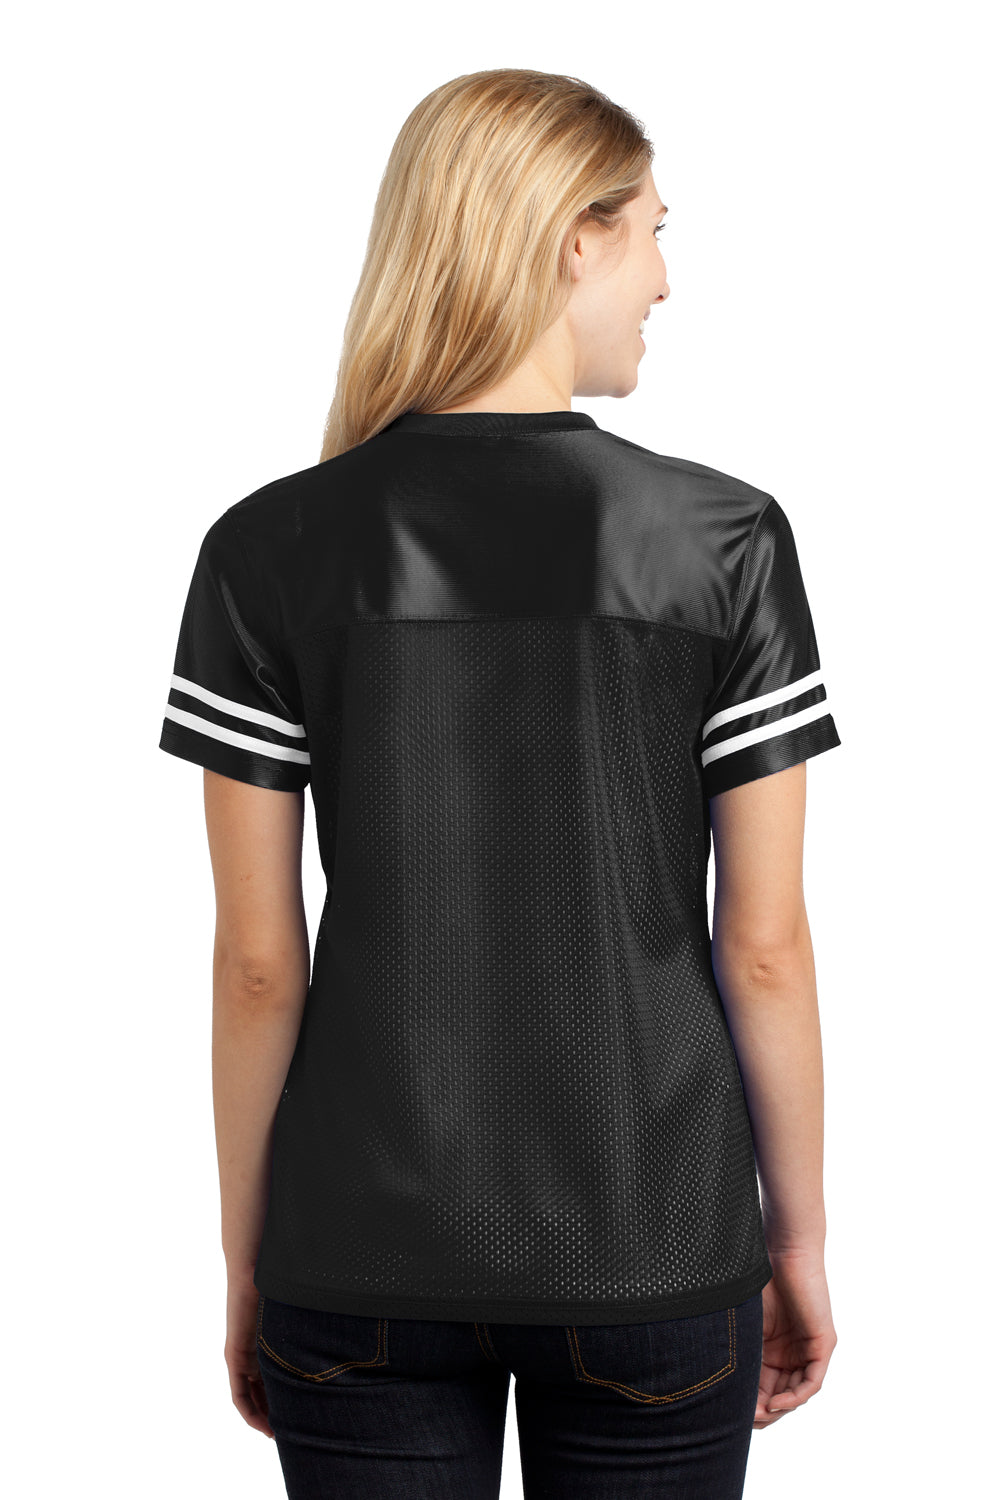 Sport-Tek LST307 Womens Short Sleeve V-Neck T-Shirt Black Back